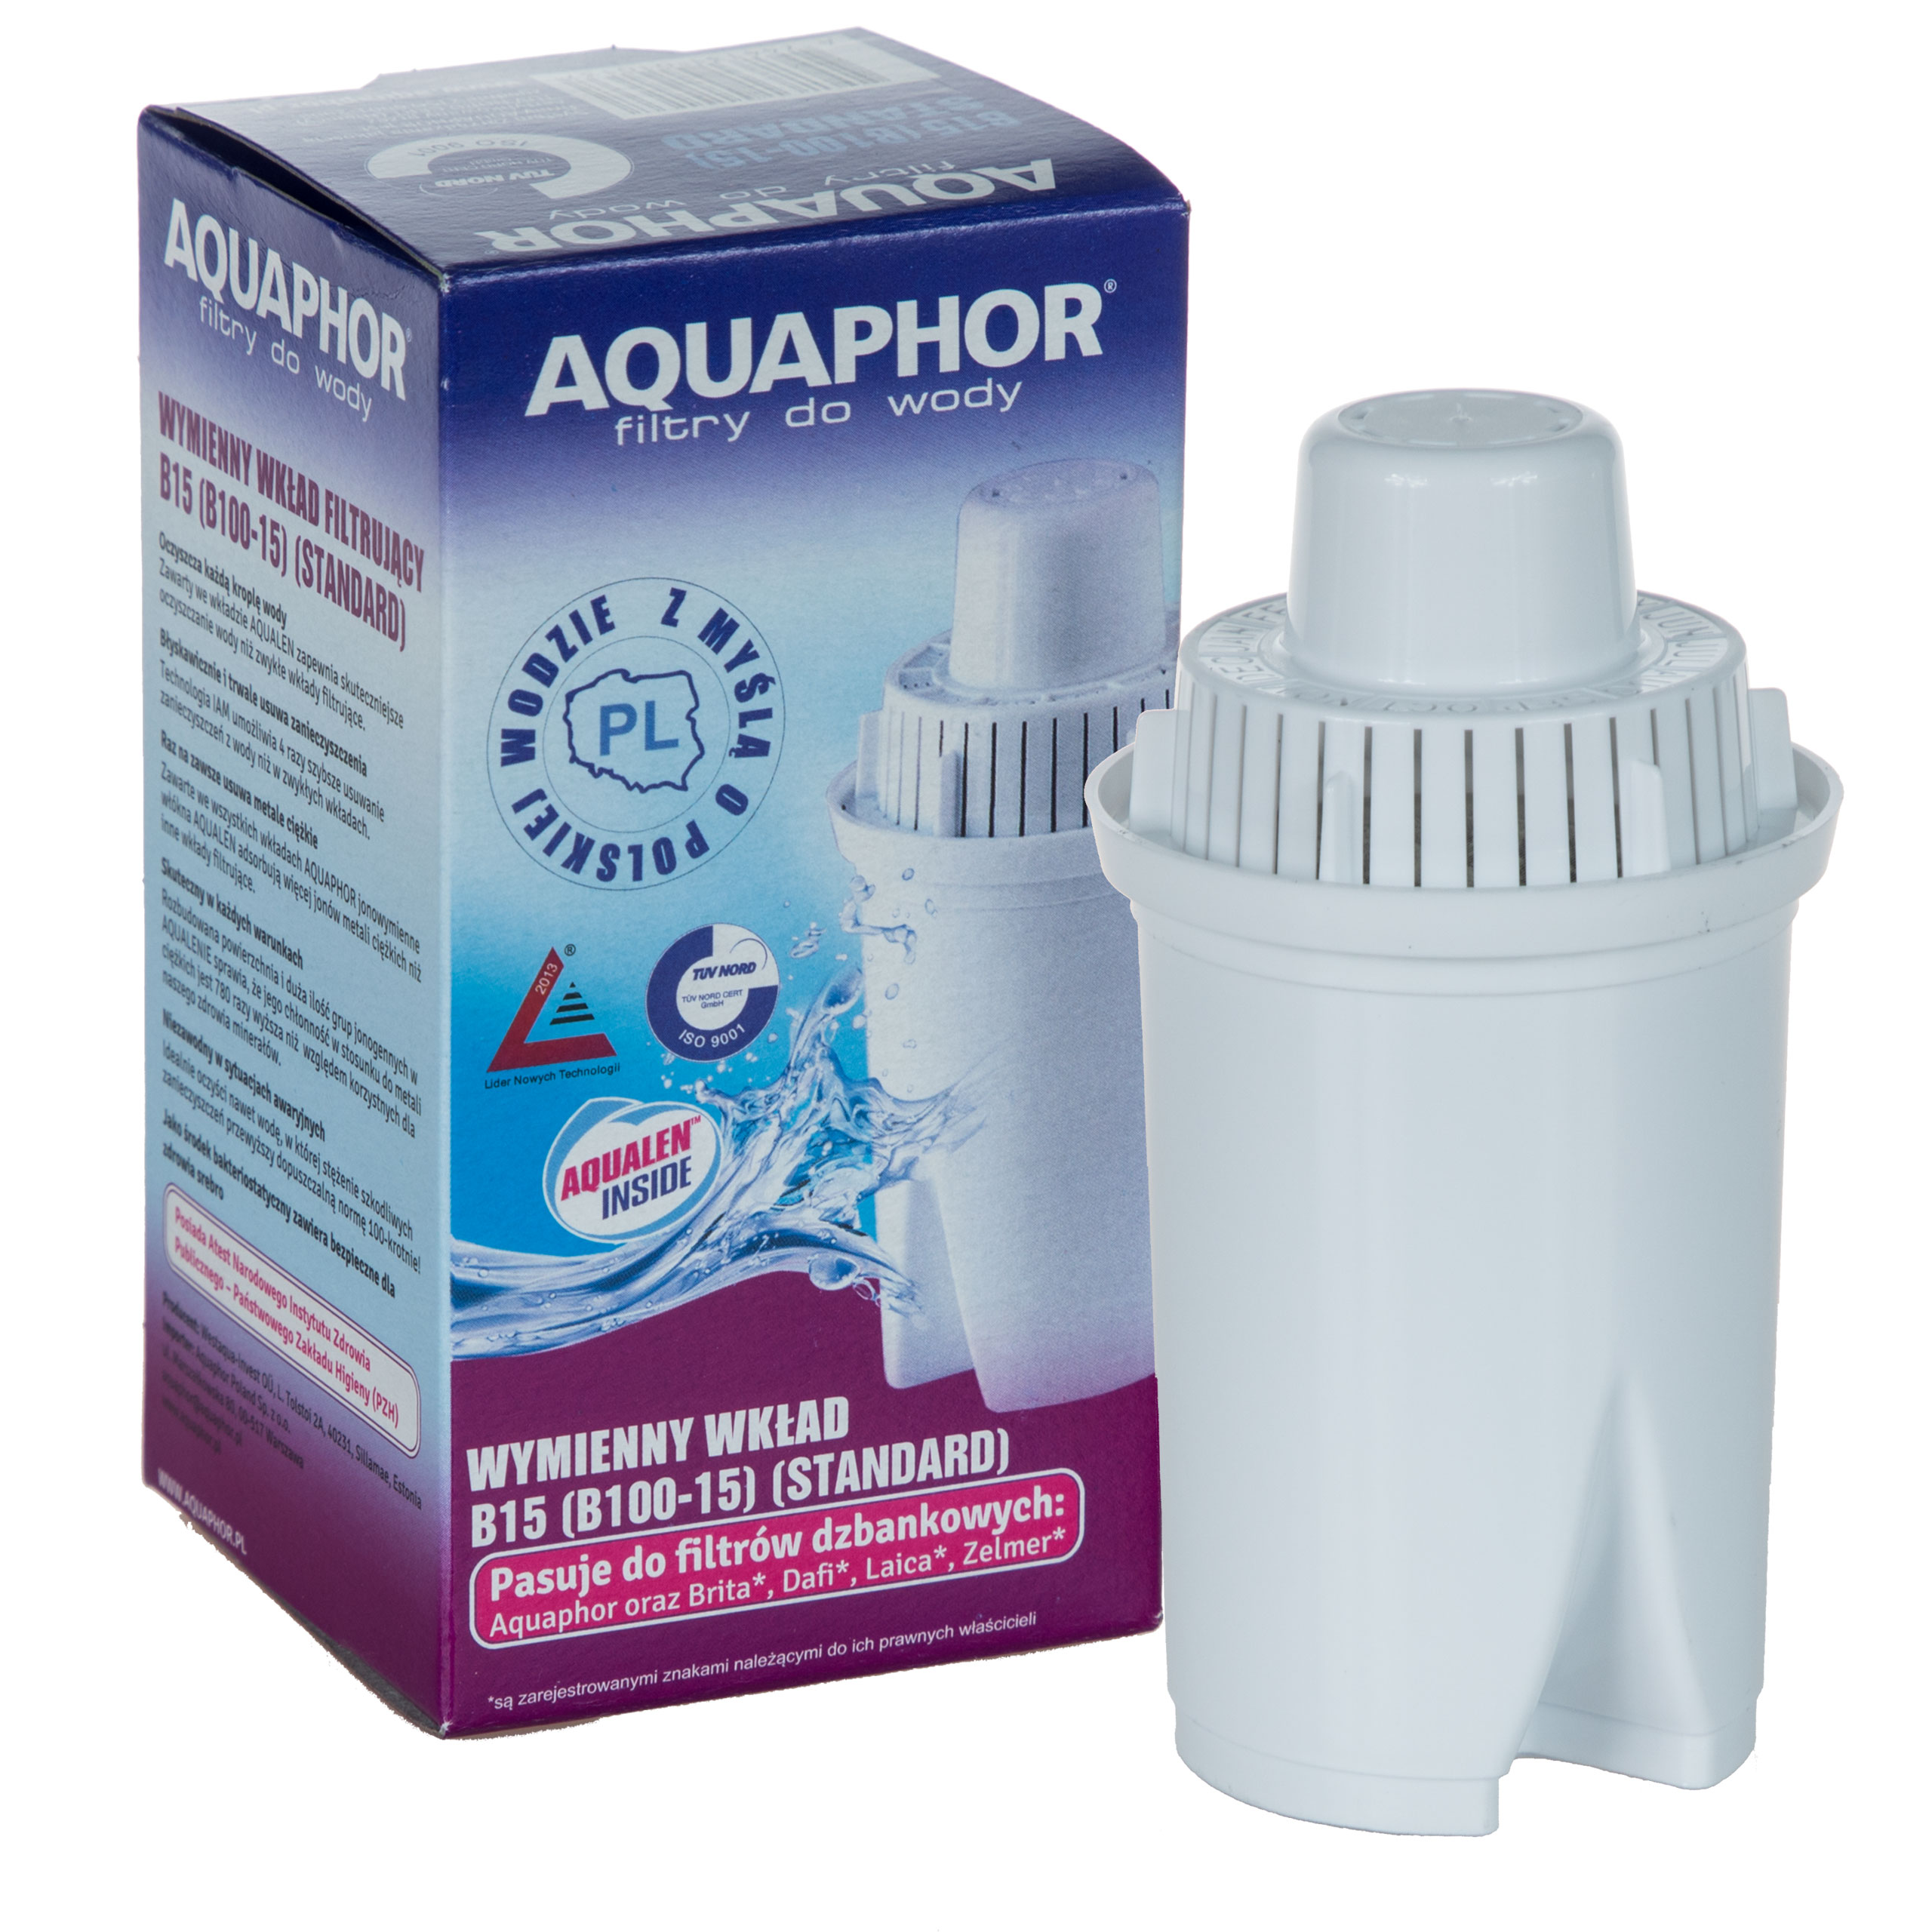 Фильтр для кувшина аквафор а5. Фильтр Аквафор в 100-15. Фильтр для воды Аквафор в100-15. Aquaphor Filter Cartridge b15 (b100-15). Фильтр Аквафор 100.